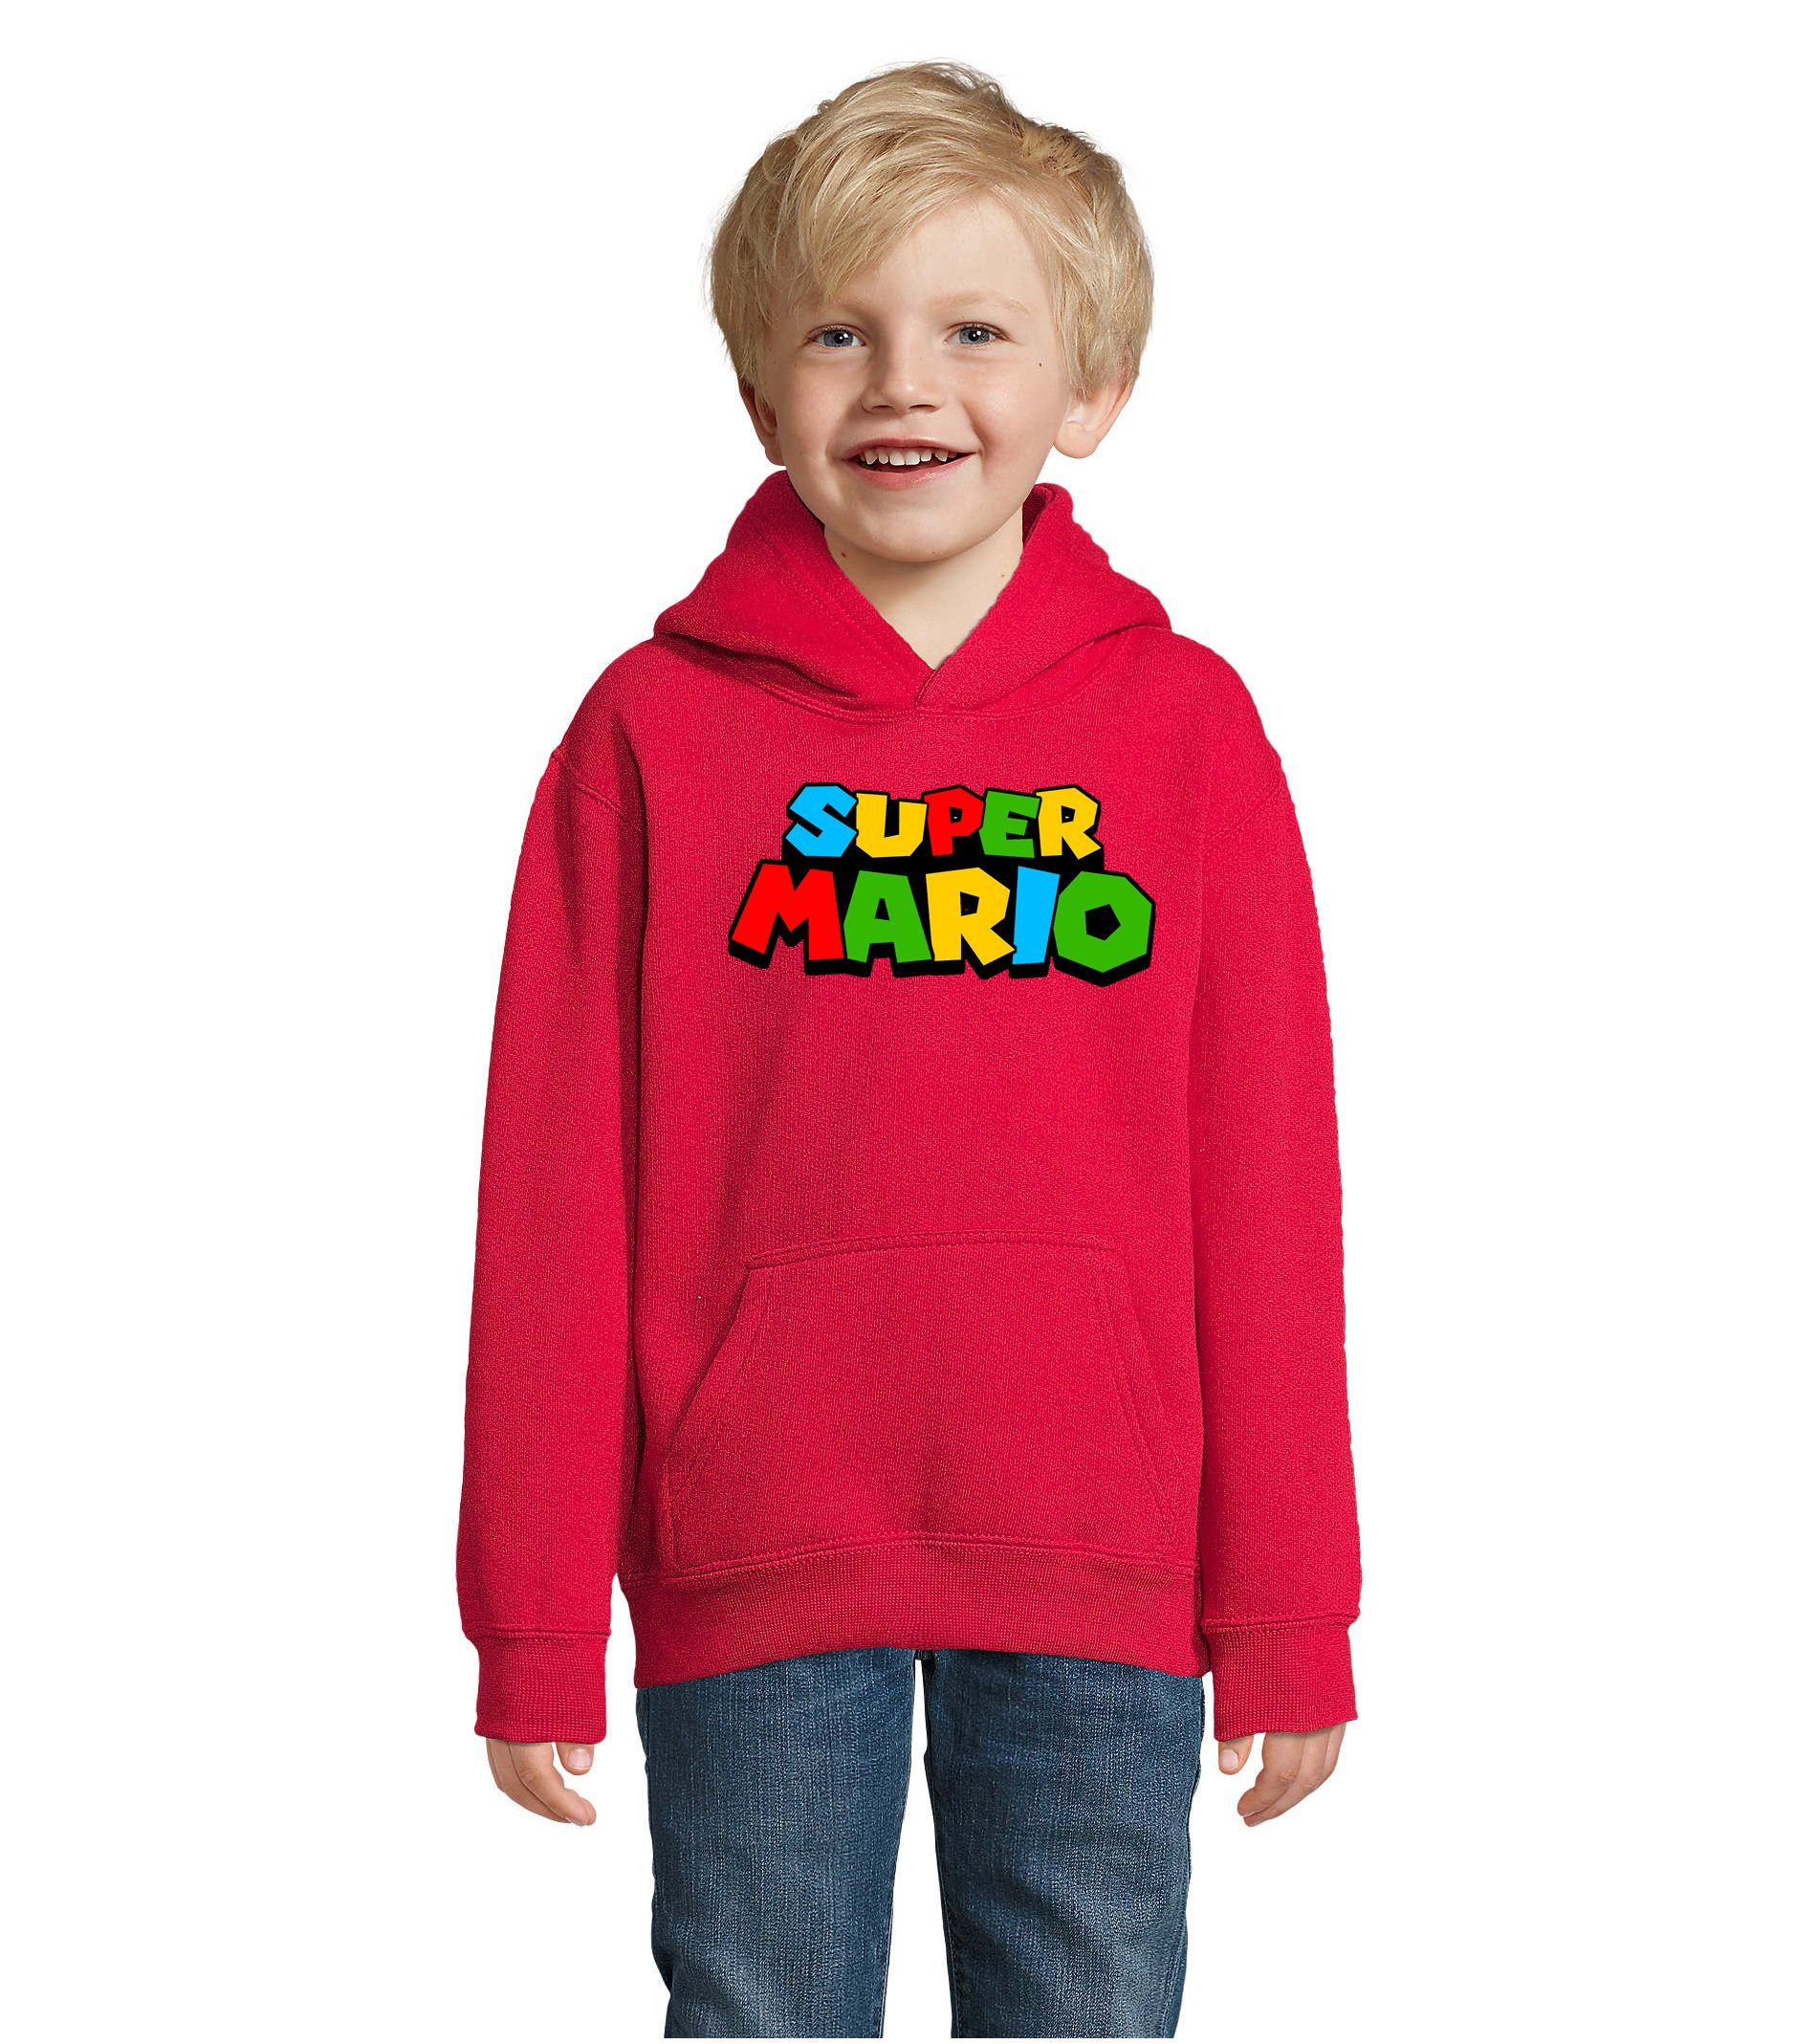 Blondie & Brownie Hoodie Kinder Super Mario Nintendo Gamer Gaming Konsole Spiele mit Kapuze Rot